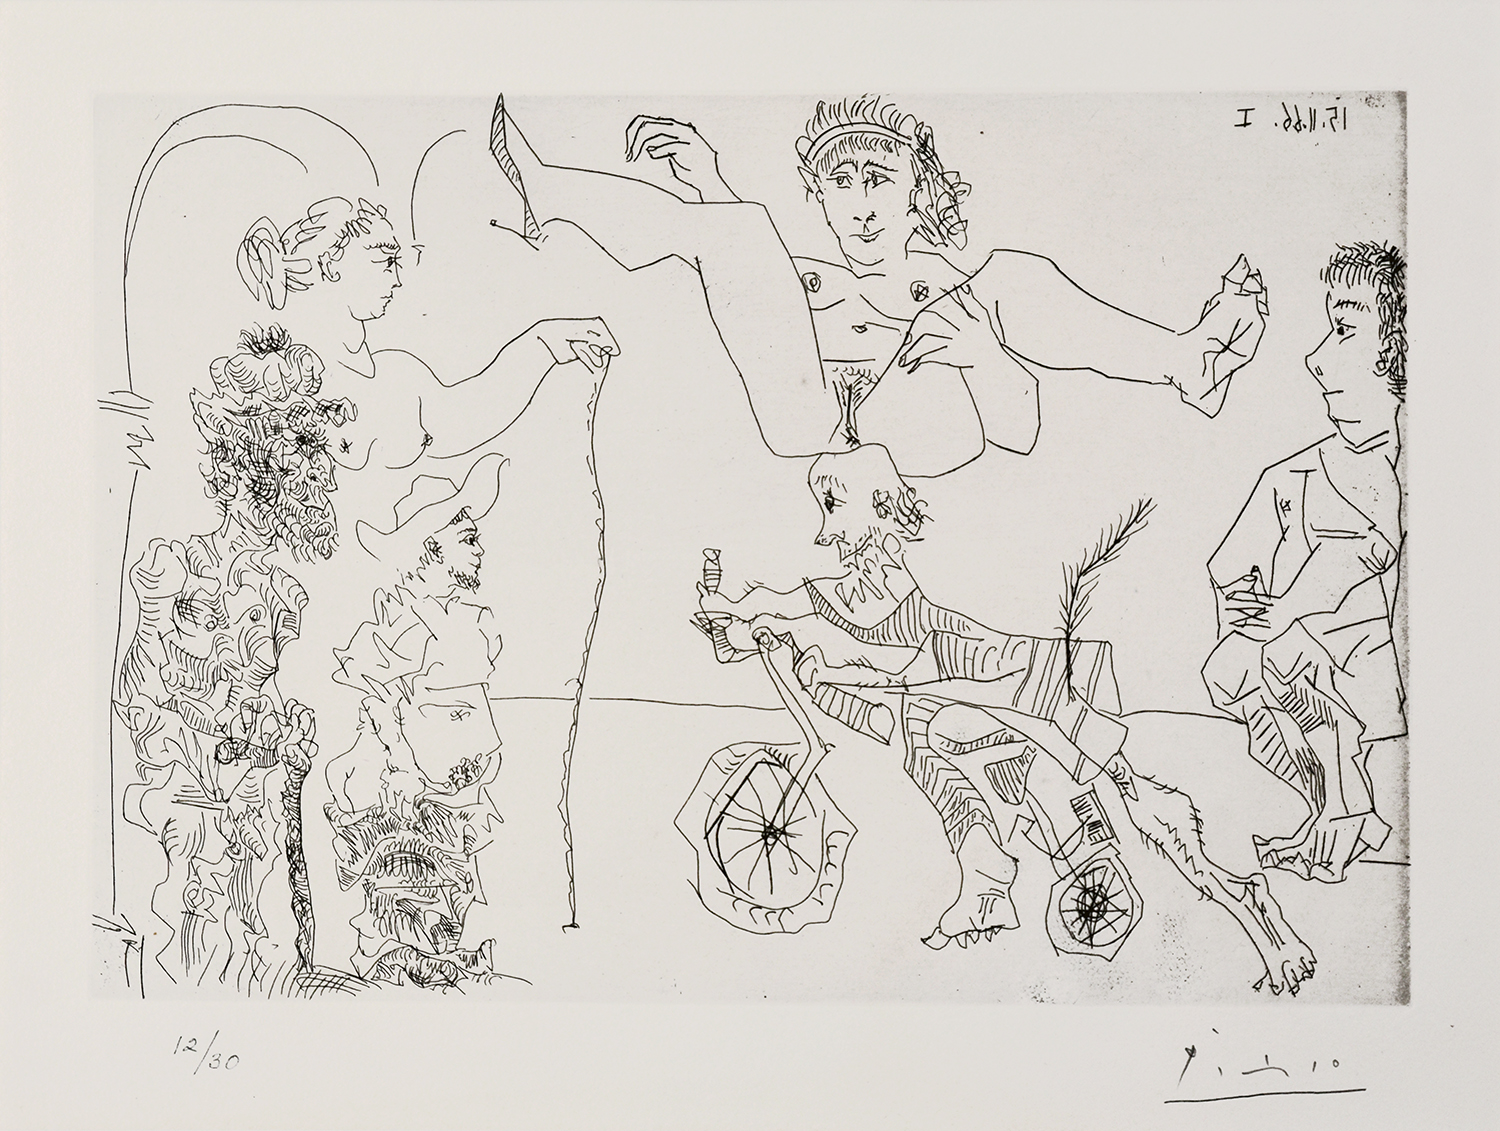 Pablo Picasso, Le Cocu Magnifique (The Magnificent Cuckold) Plate 5, 1968